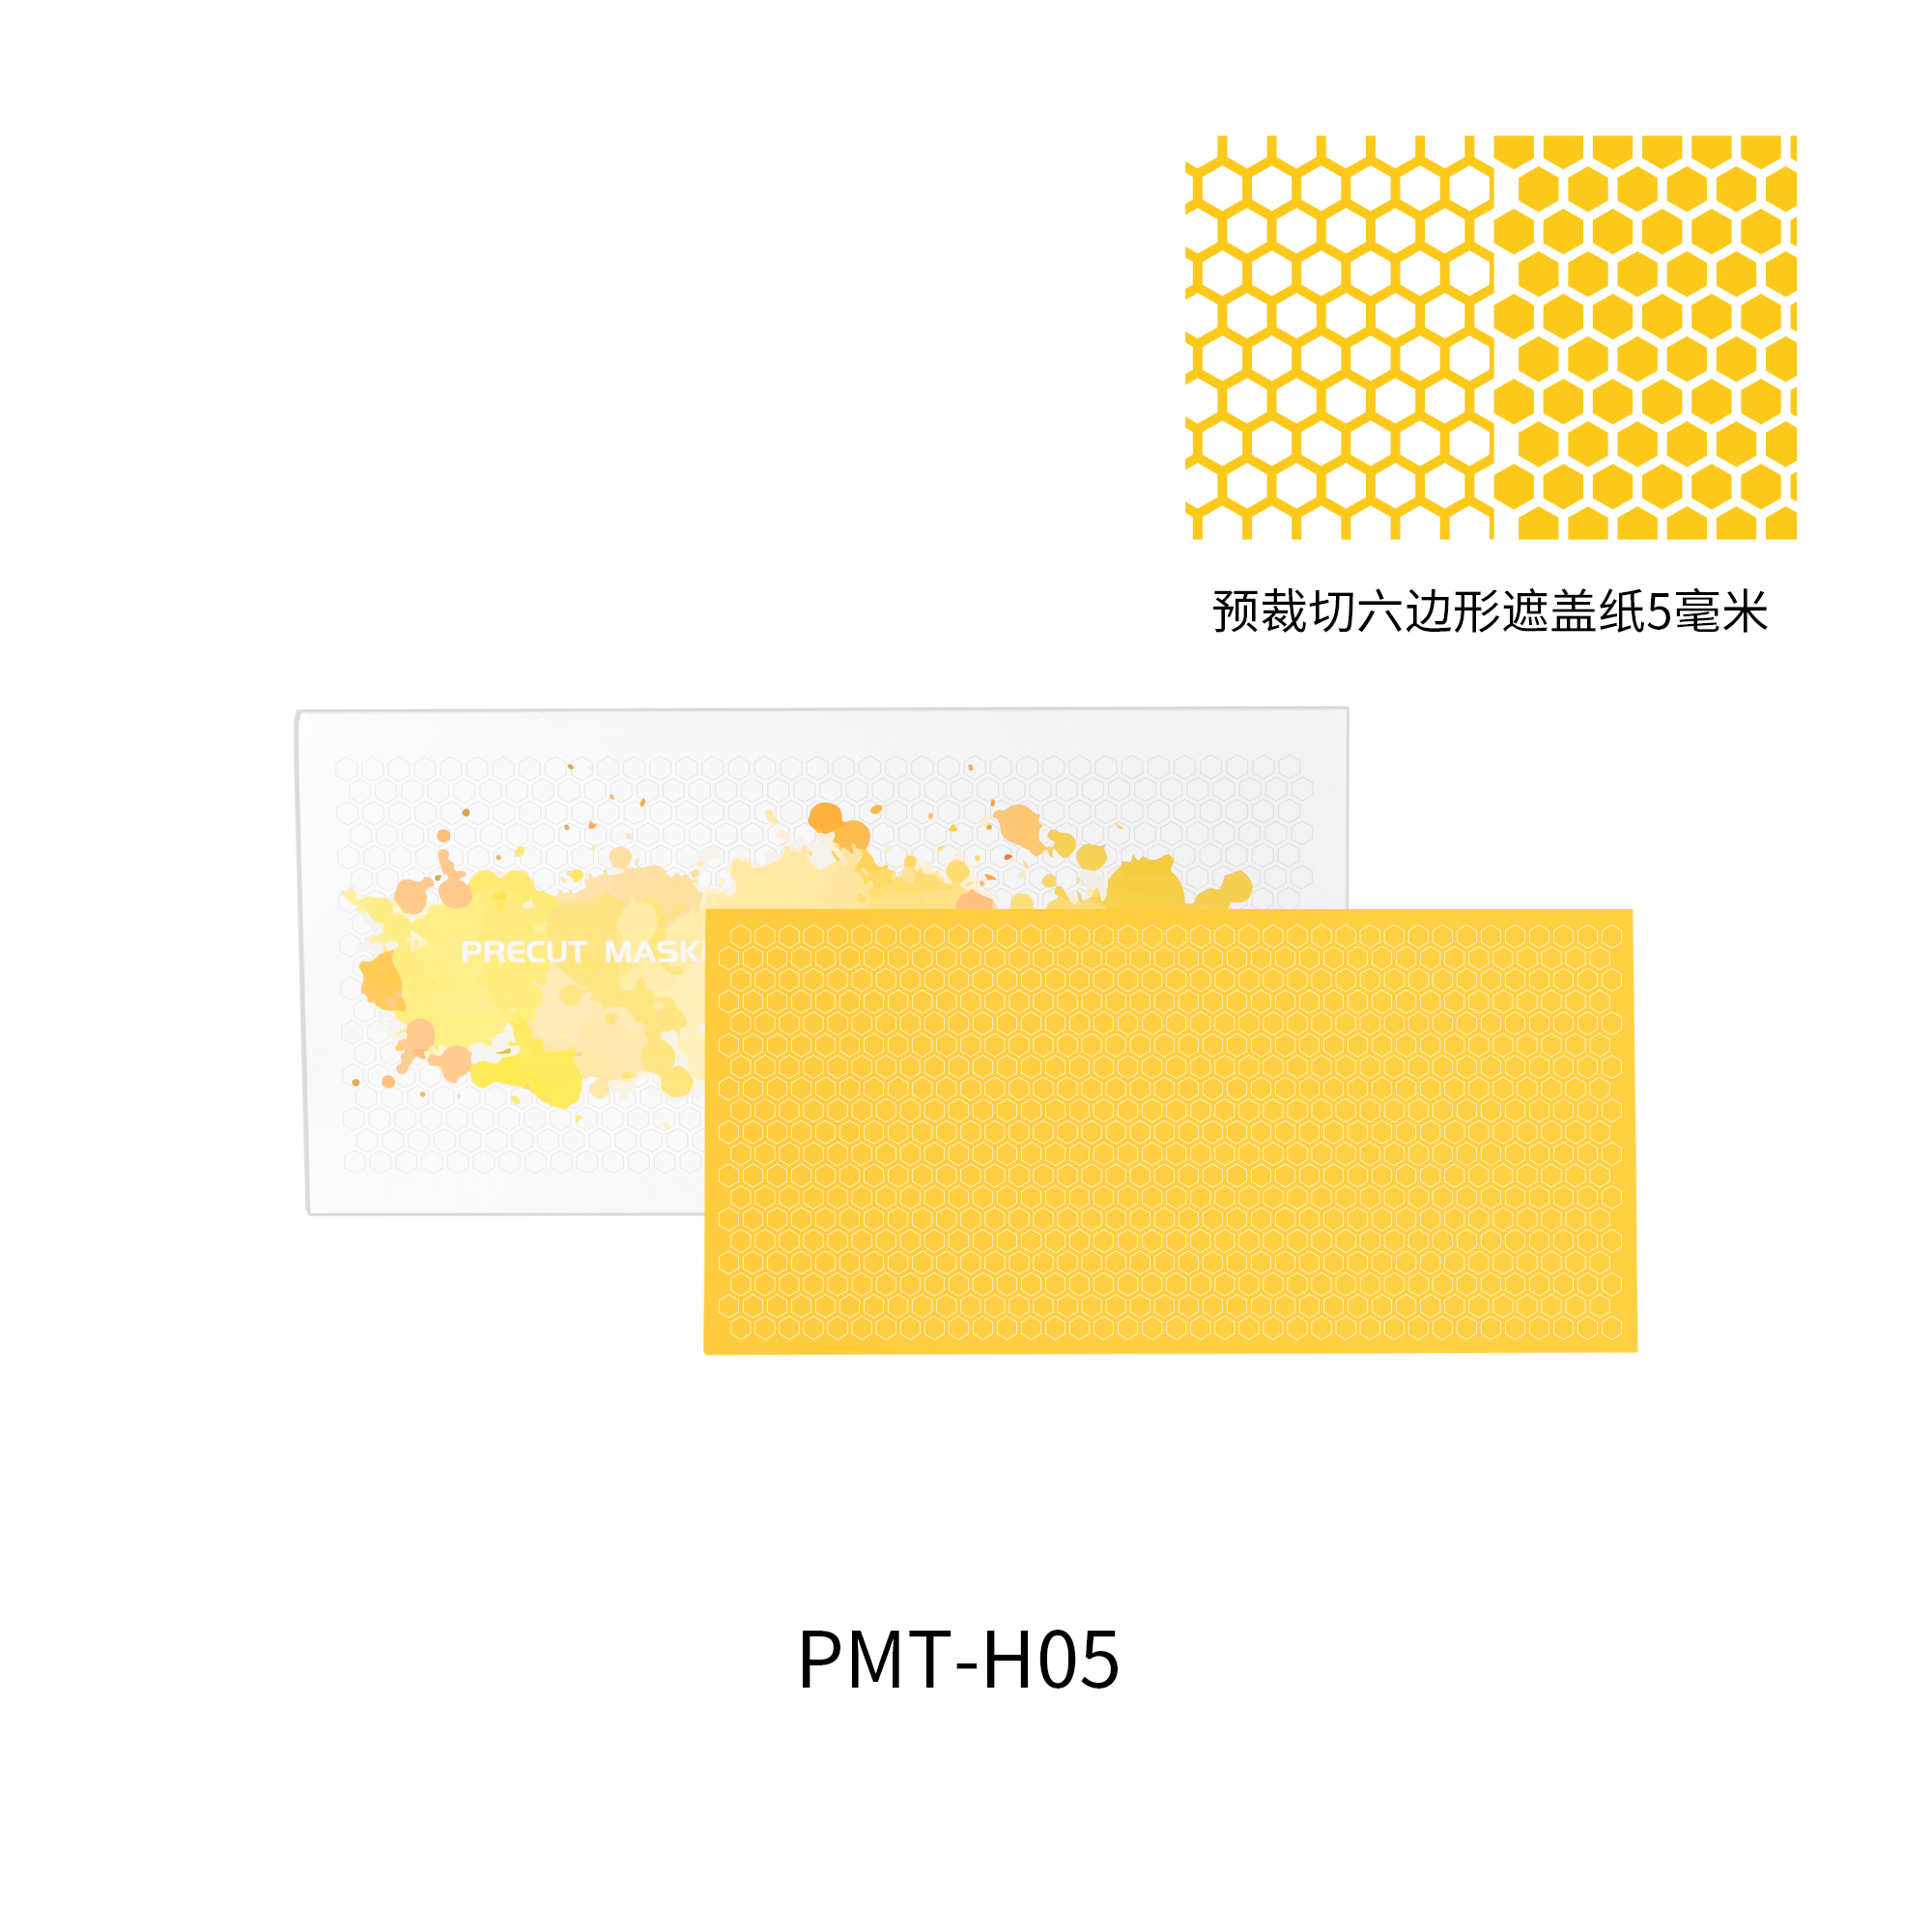 PMT-H05  инструменты для работы с краской  Маскировочная лента, шестиугольник 5 мм